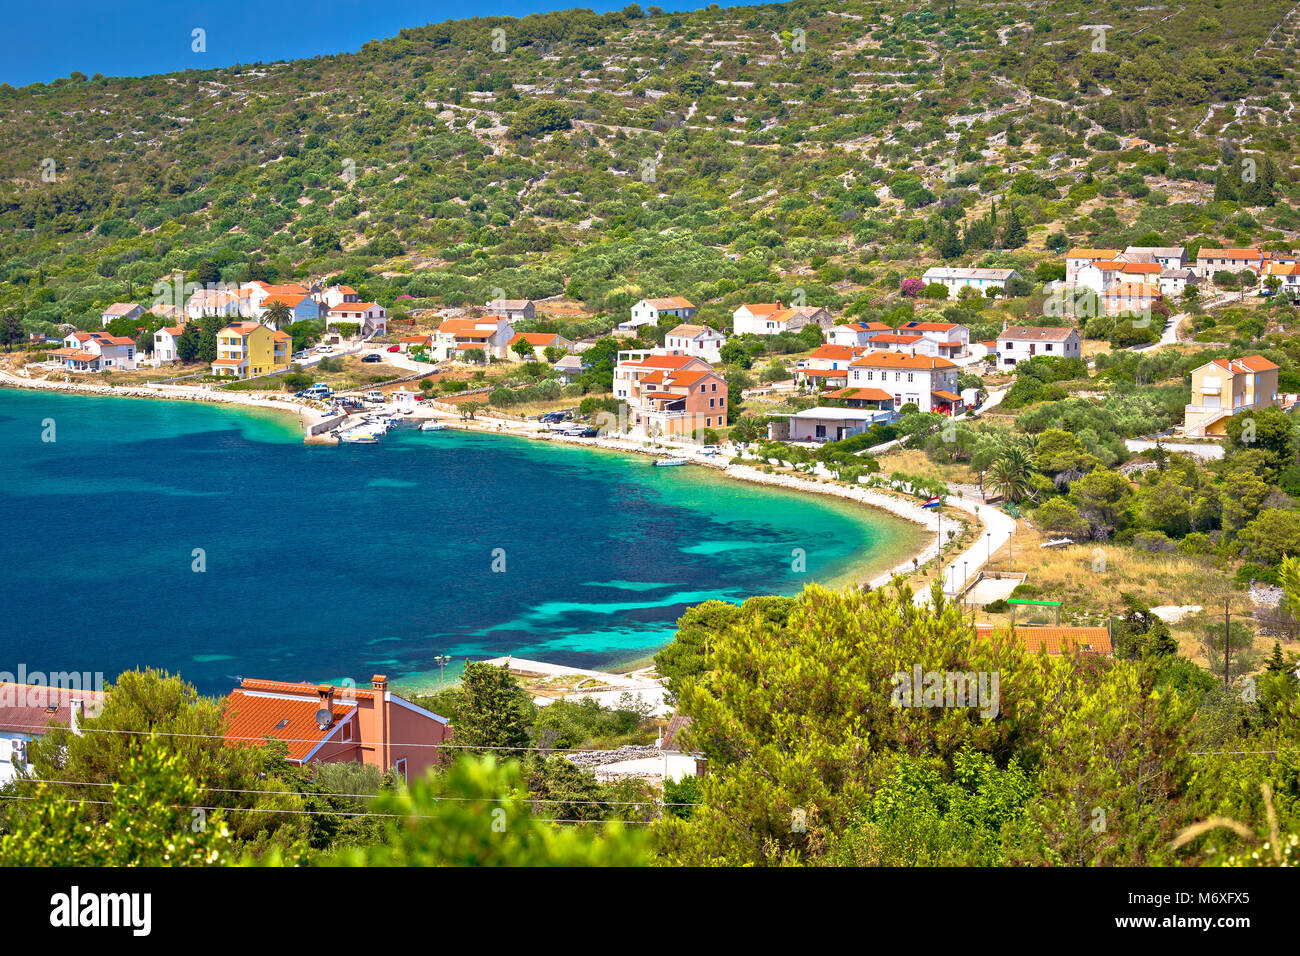 Villaggio di Soline bay su Dugi Otok, arcipelago della Dalmazia, Croazia Foto Stock